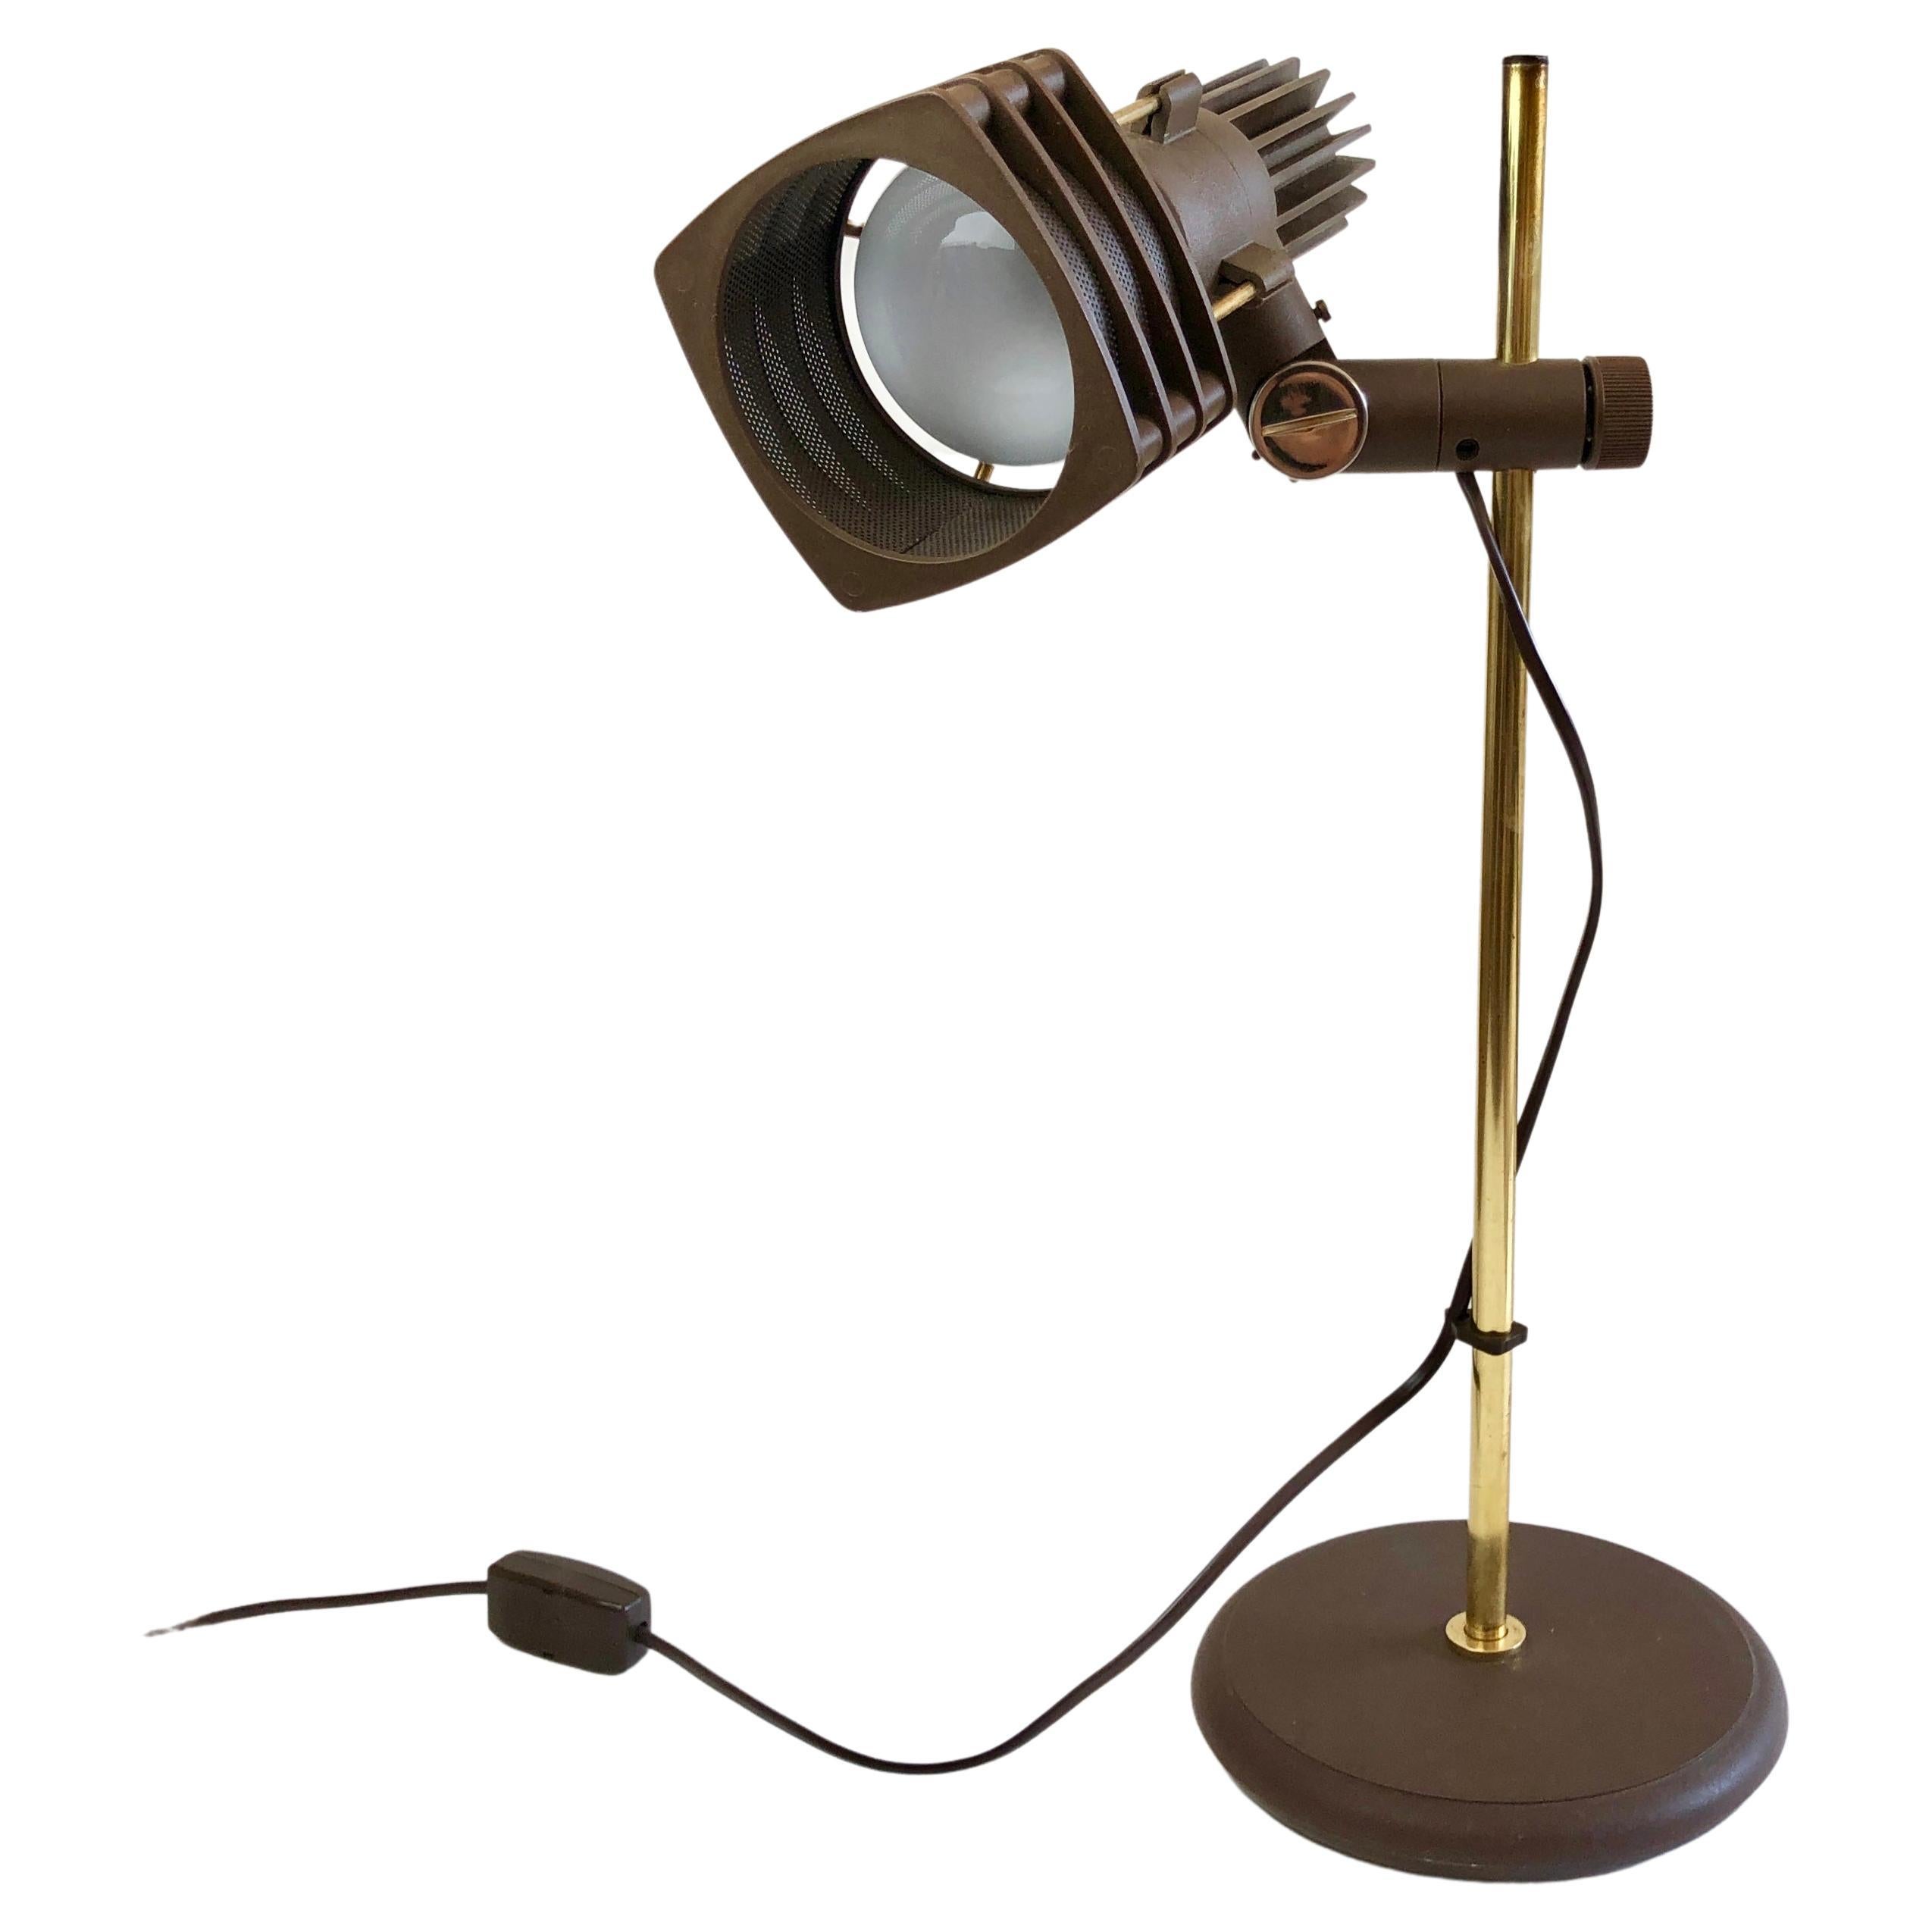 Lampe de bureau du milieu du siècle dernier - fabriquée en Espagne, attribuée à Fase.
Une véritable lampe des années 70, en bel état d'origine.

Fabriqué en plastique brun foncé avec une finition 